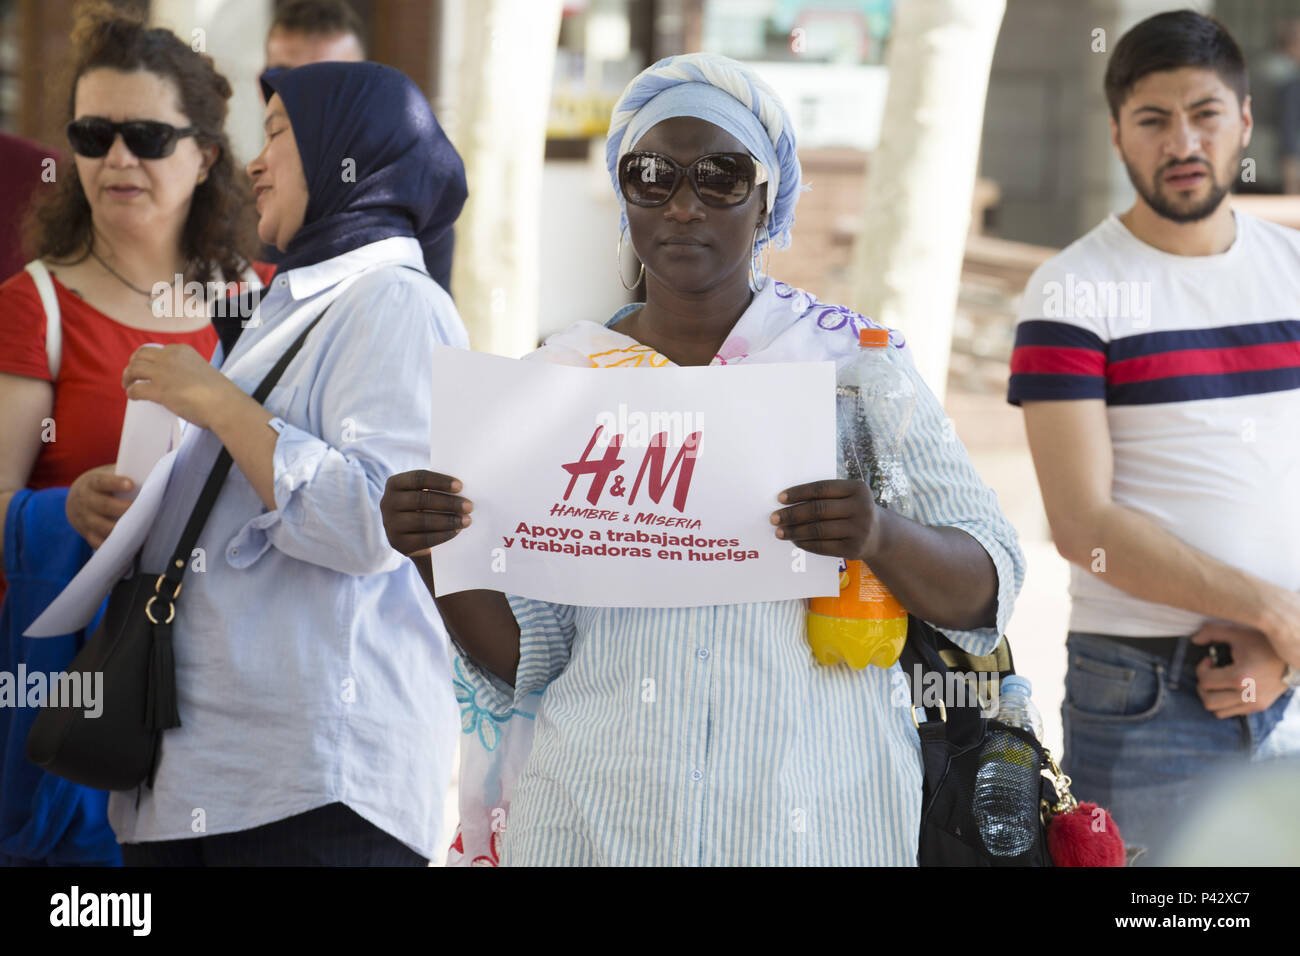 Madrid, Spanien. 20 Juni, 2018. Ein H&M-Mitarbeiter Streikten gesehen hält  ein Plakat während der Demonstration. Arbeiter der H&M Logistik Zentrum in  Madrid hat in den Streik getreten und nahm an der Straße